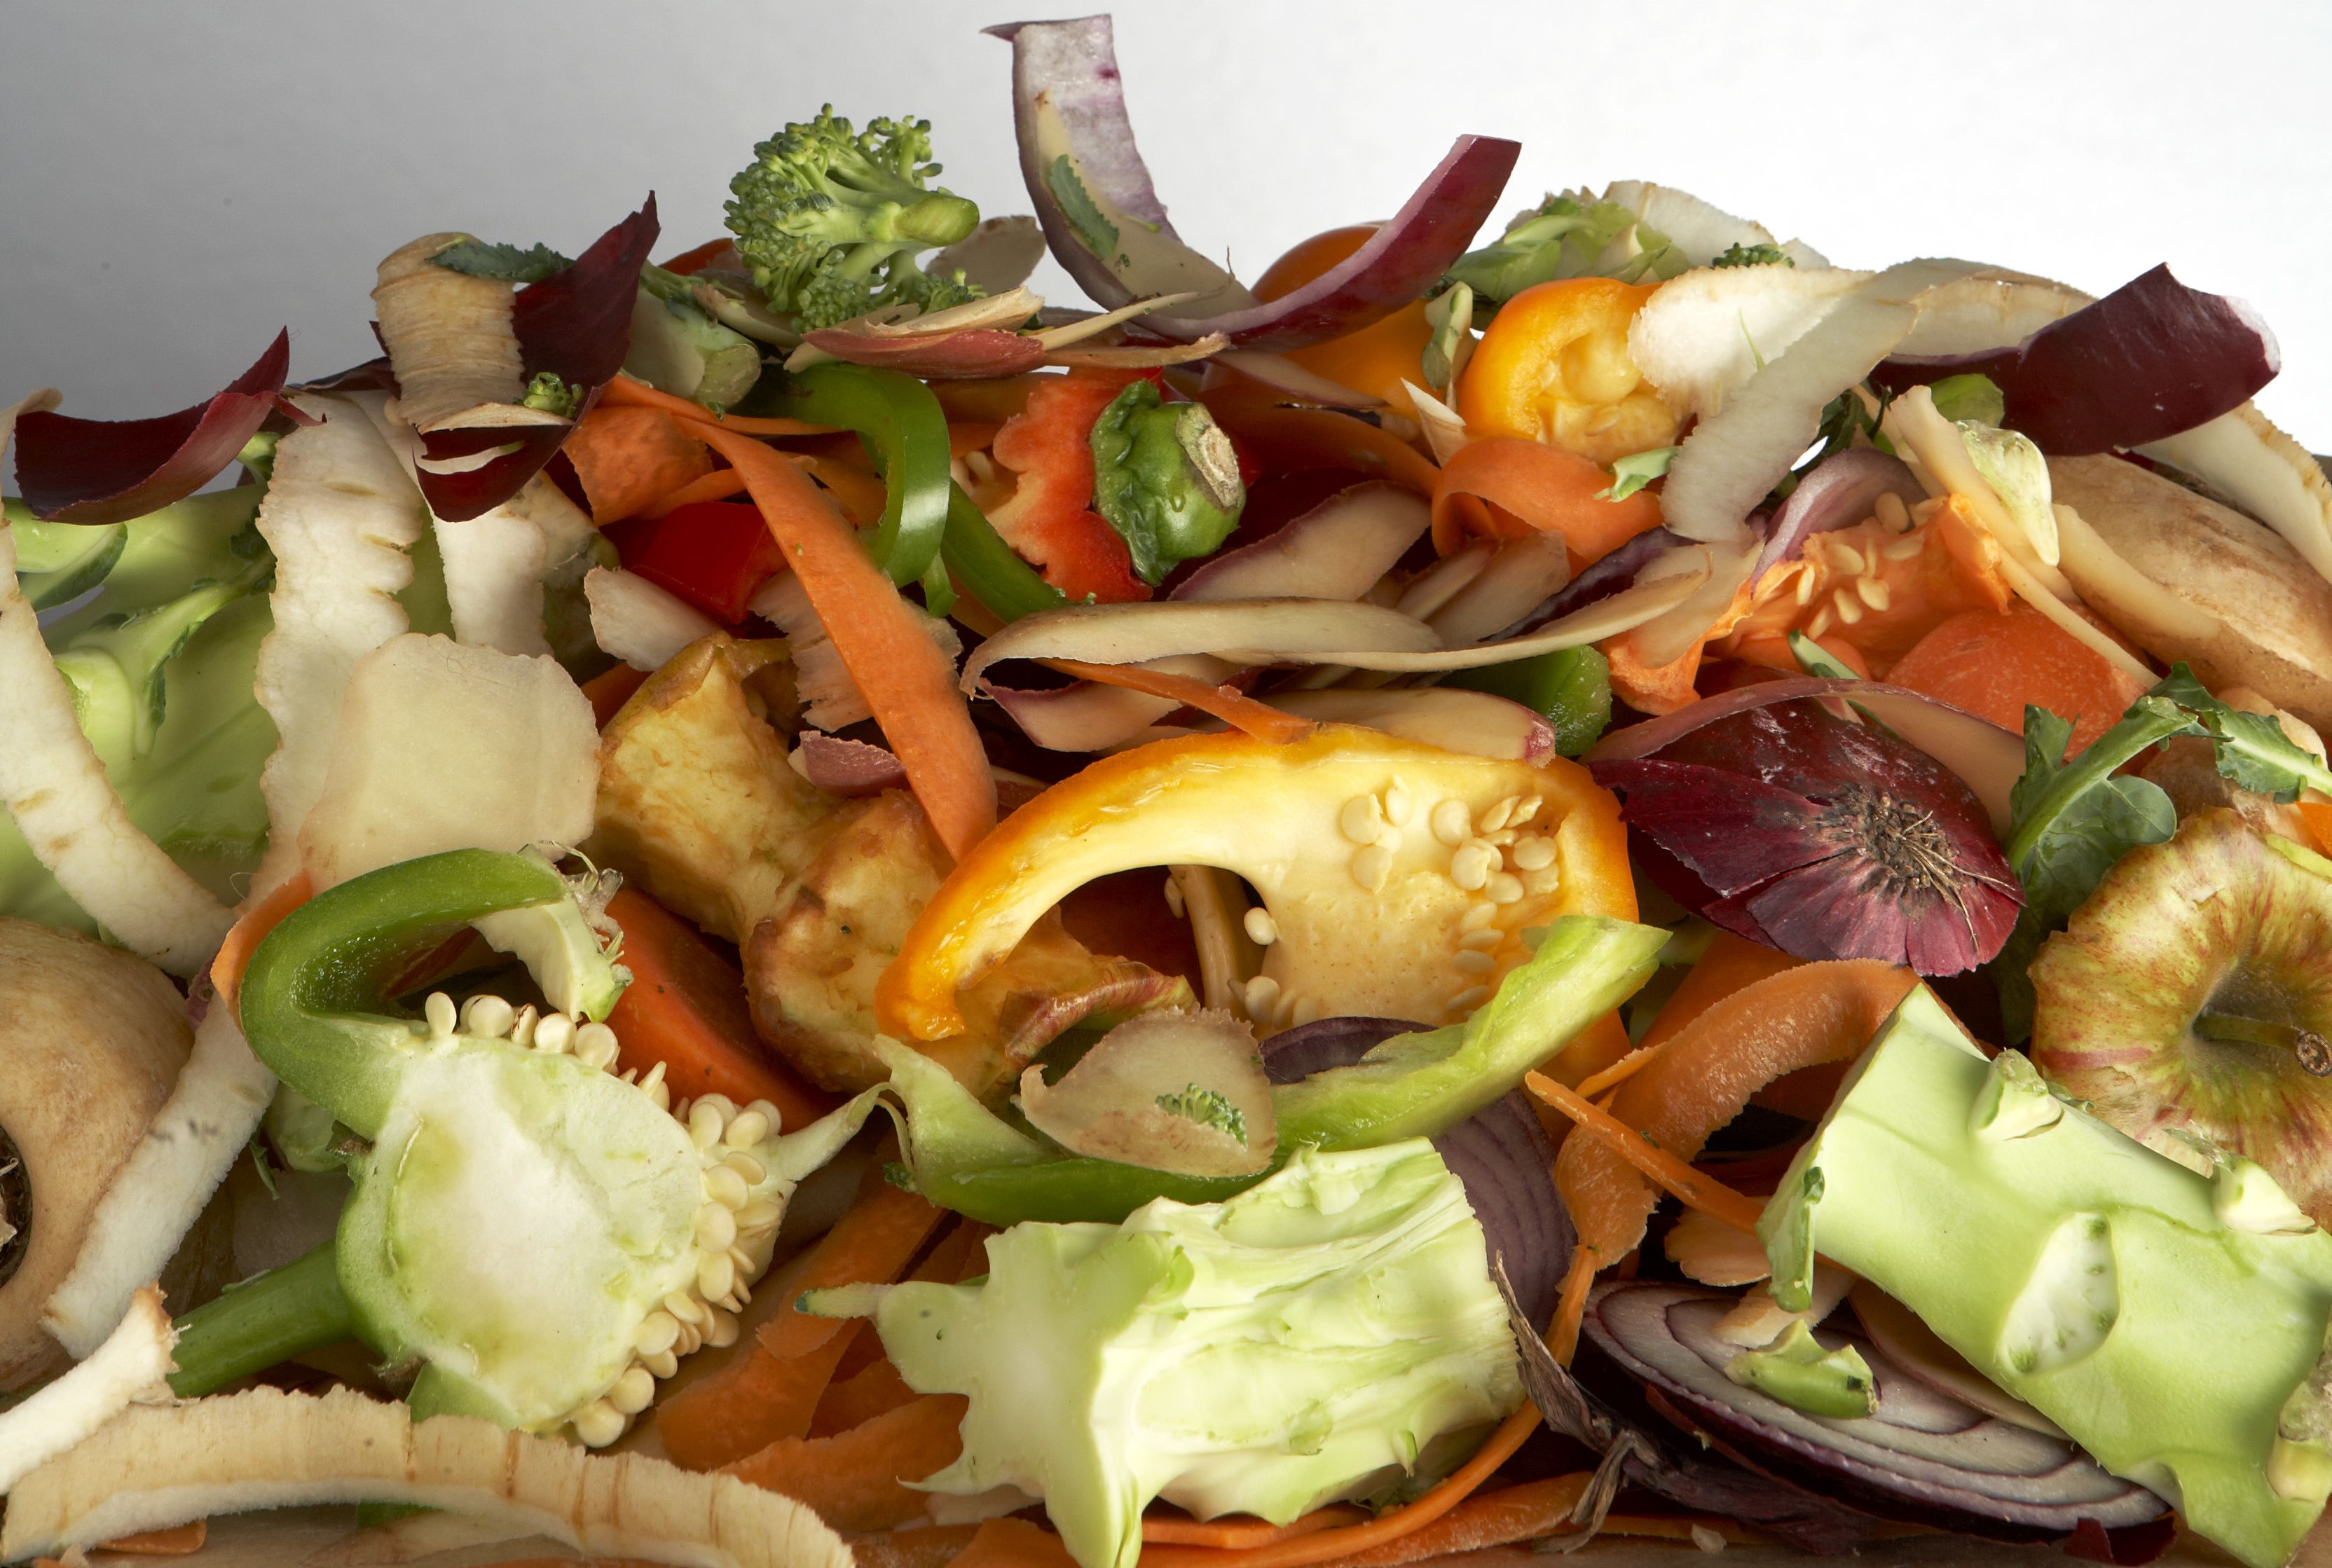 Giornata contro lo spreco alimentare, nel mondo si buttano 1,3 mld tonnellate di cibo